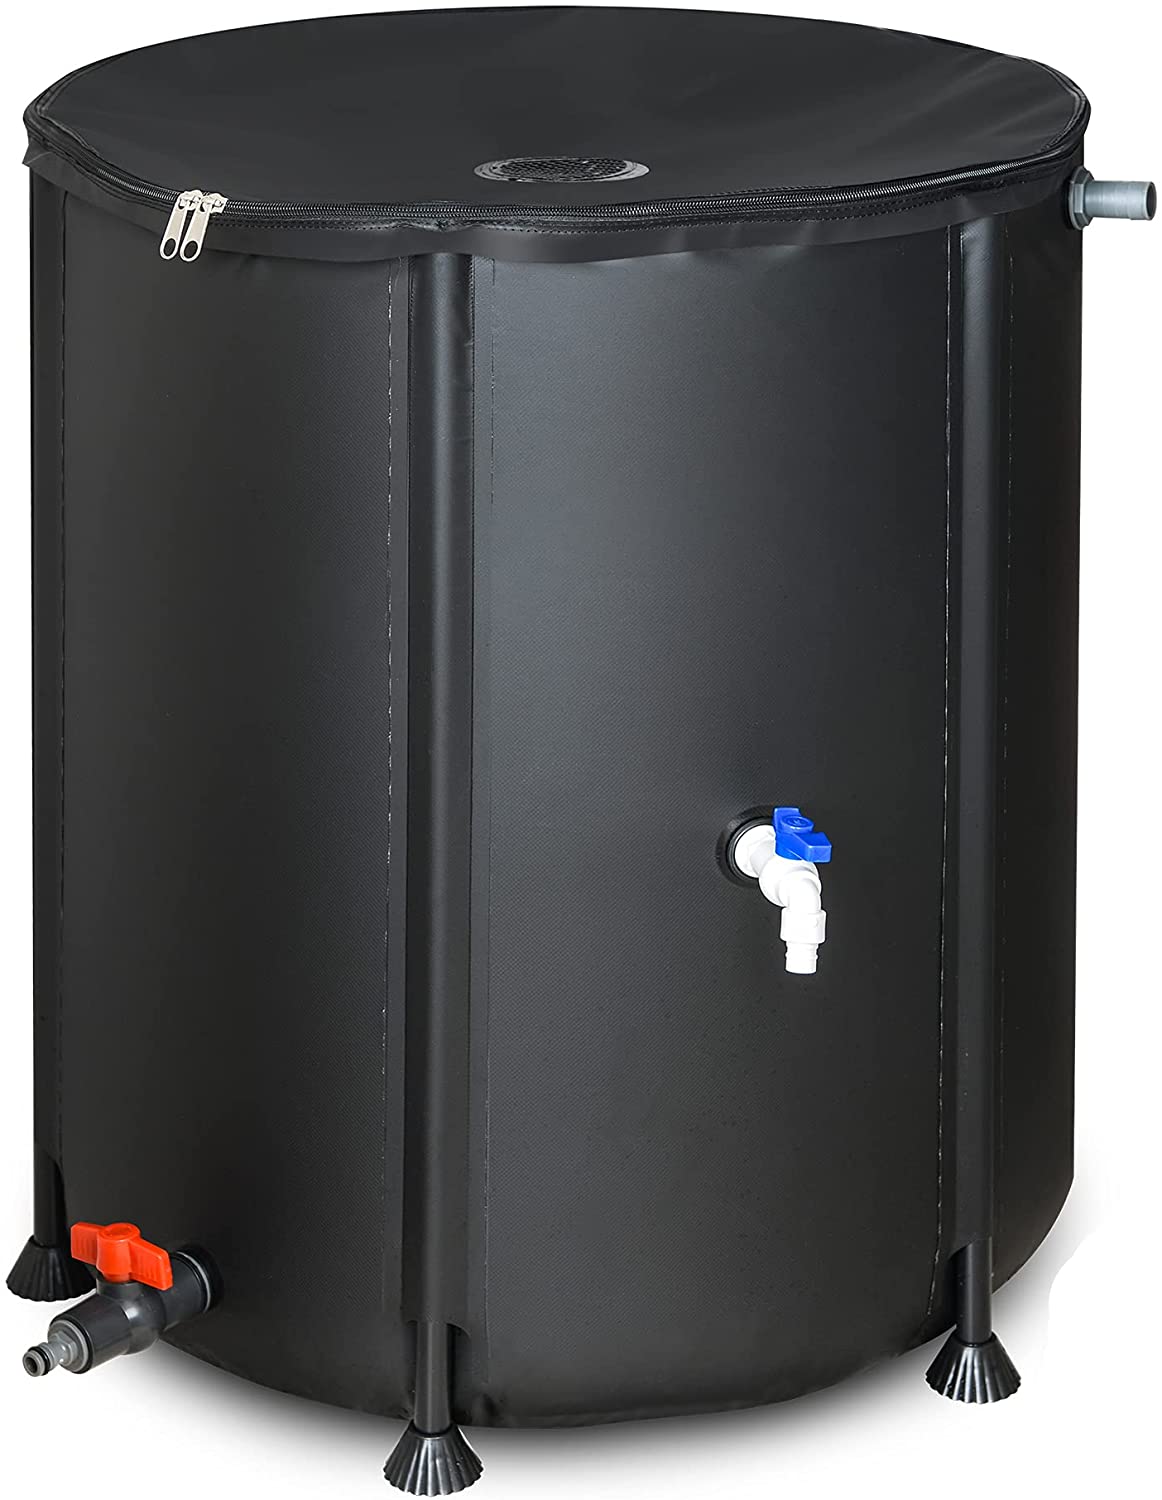 LOSTRONAUT Eco-Friendly Rain Barrel, 53-Gallon